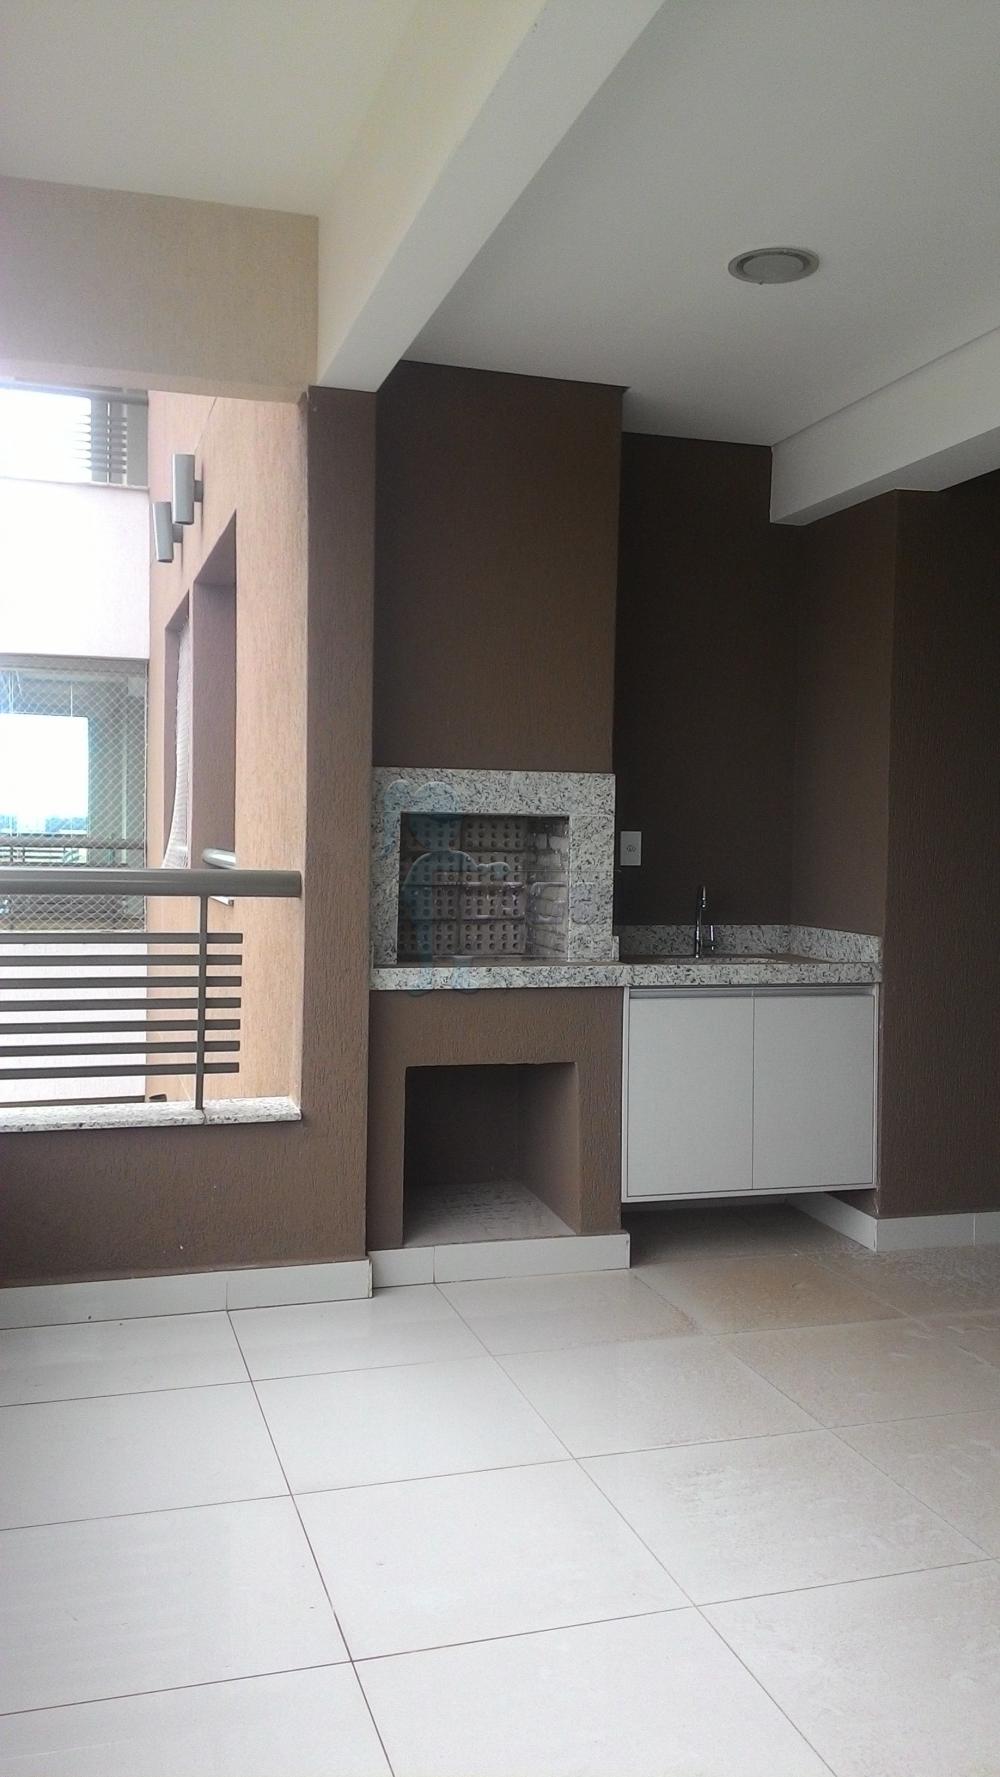 Alugar Apartamentos / Padrão em Ribeirão Preto R$ 2.300,00 - Foto 6